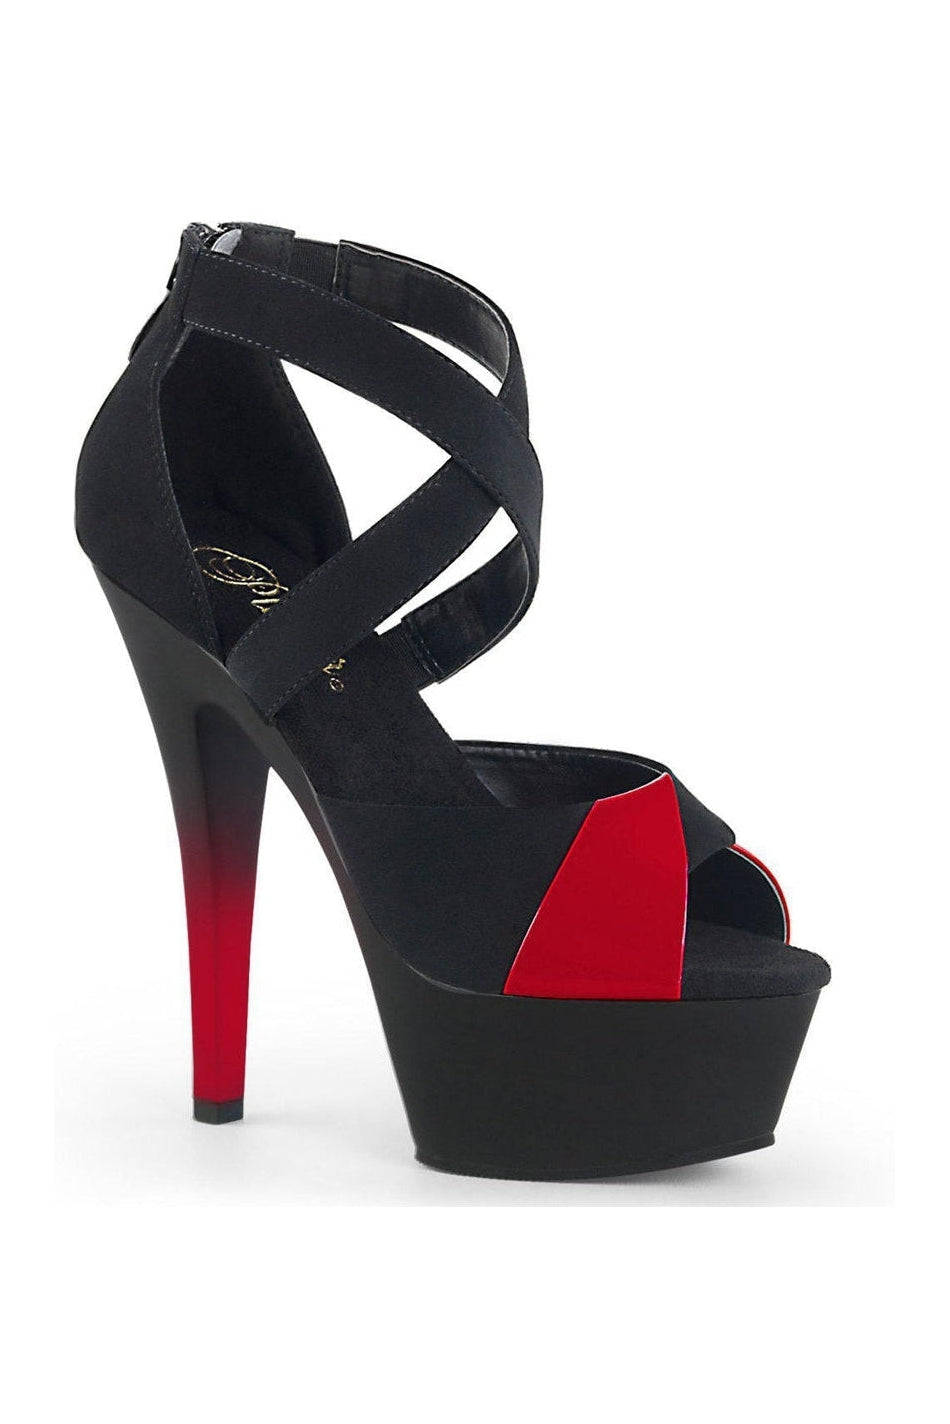 KISS-221 Platform Sandal | Black Patent-Sandals-Pleaser-SEXYSHOES.COM